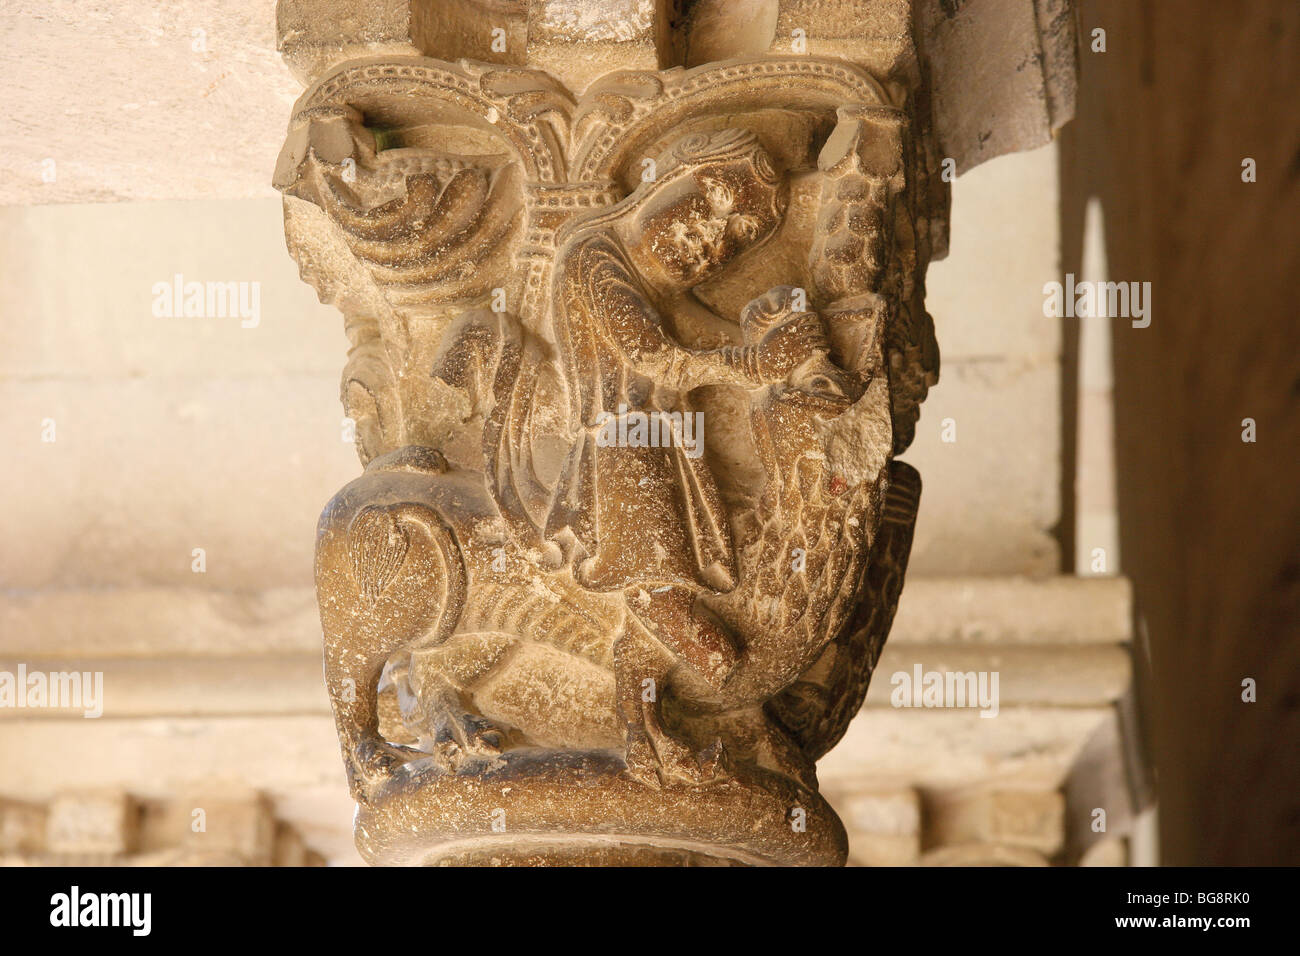 Das königliche Benediktiner Kloster Saint Cugat. Hauptstadt von Samson erschlägt die Löwen. Katalonien. Spanien. Stockfoto